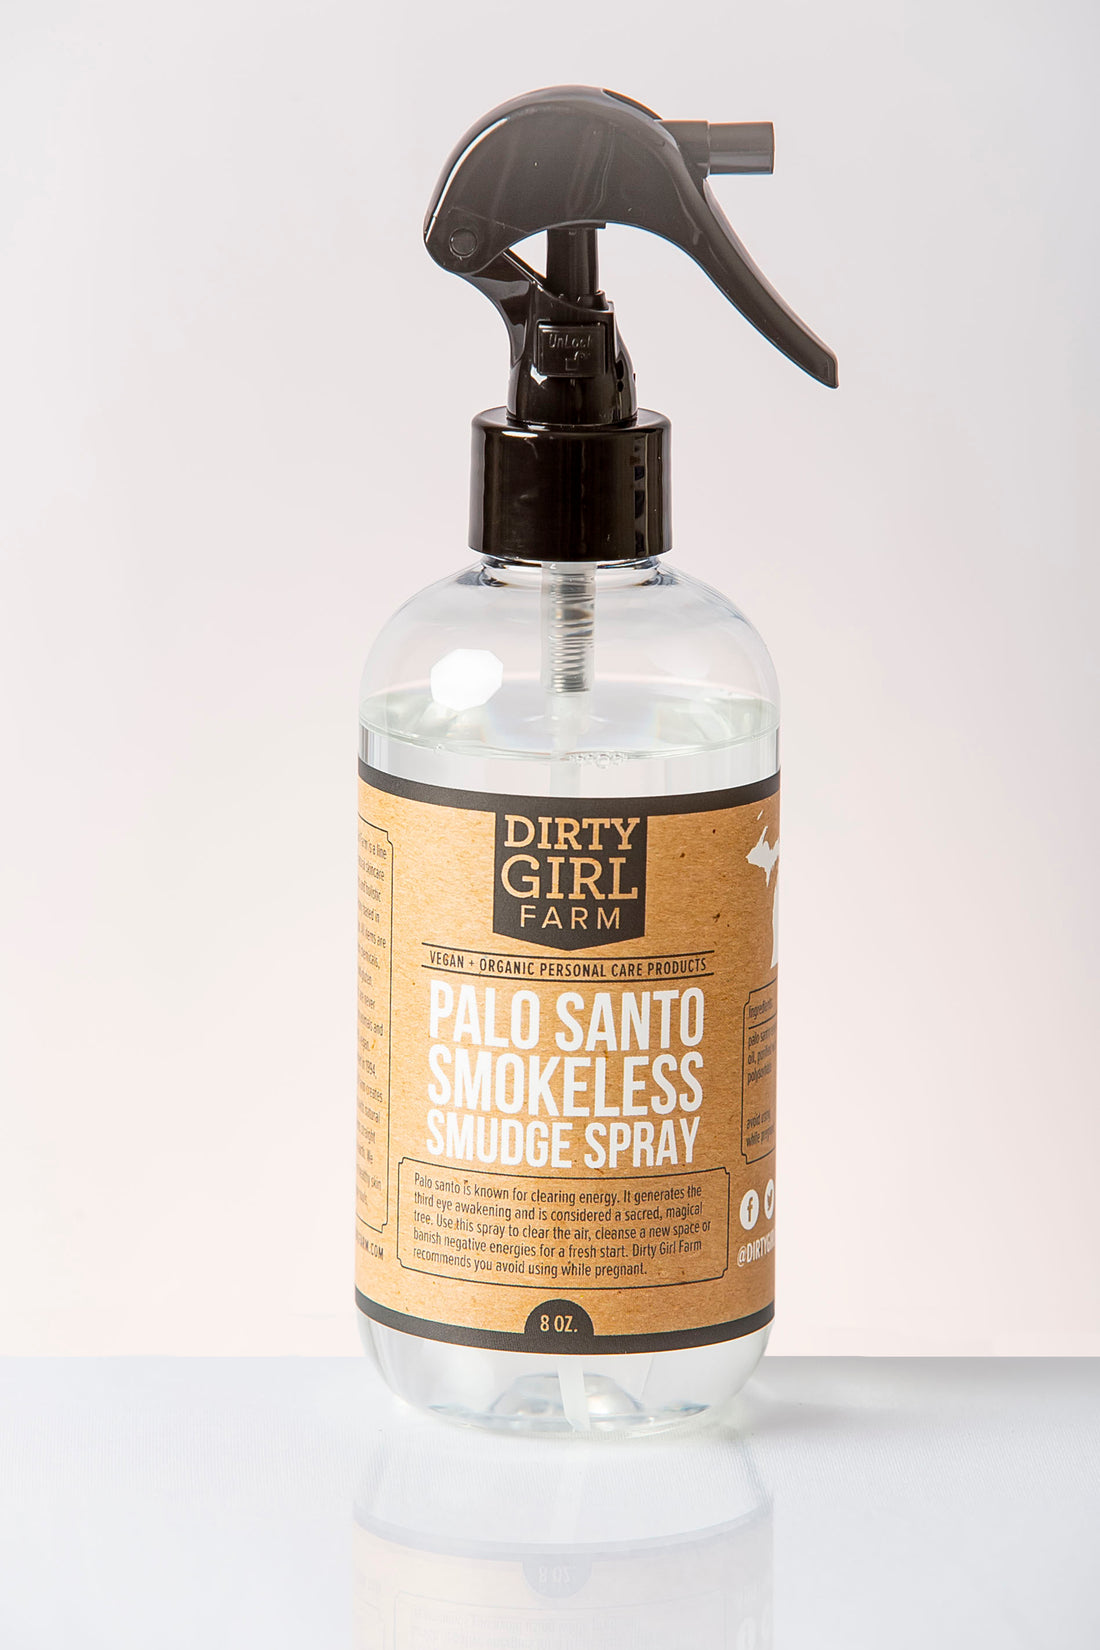 Dirty Girl Farm Palo Santo Smokeless Smudge Spray